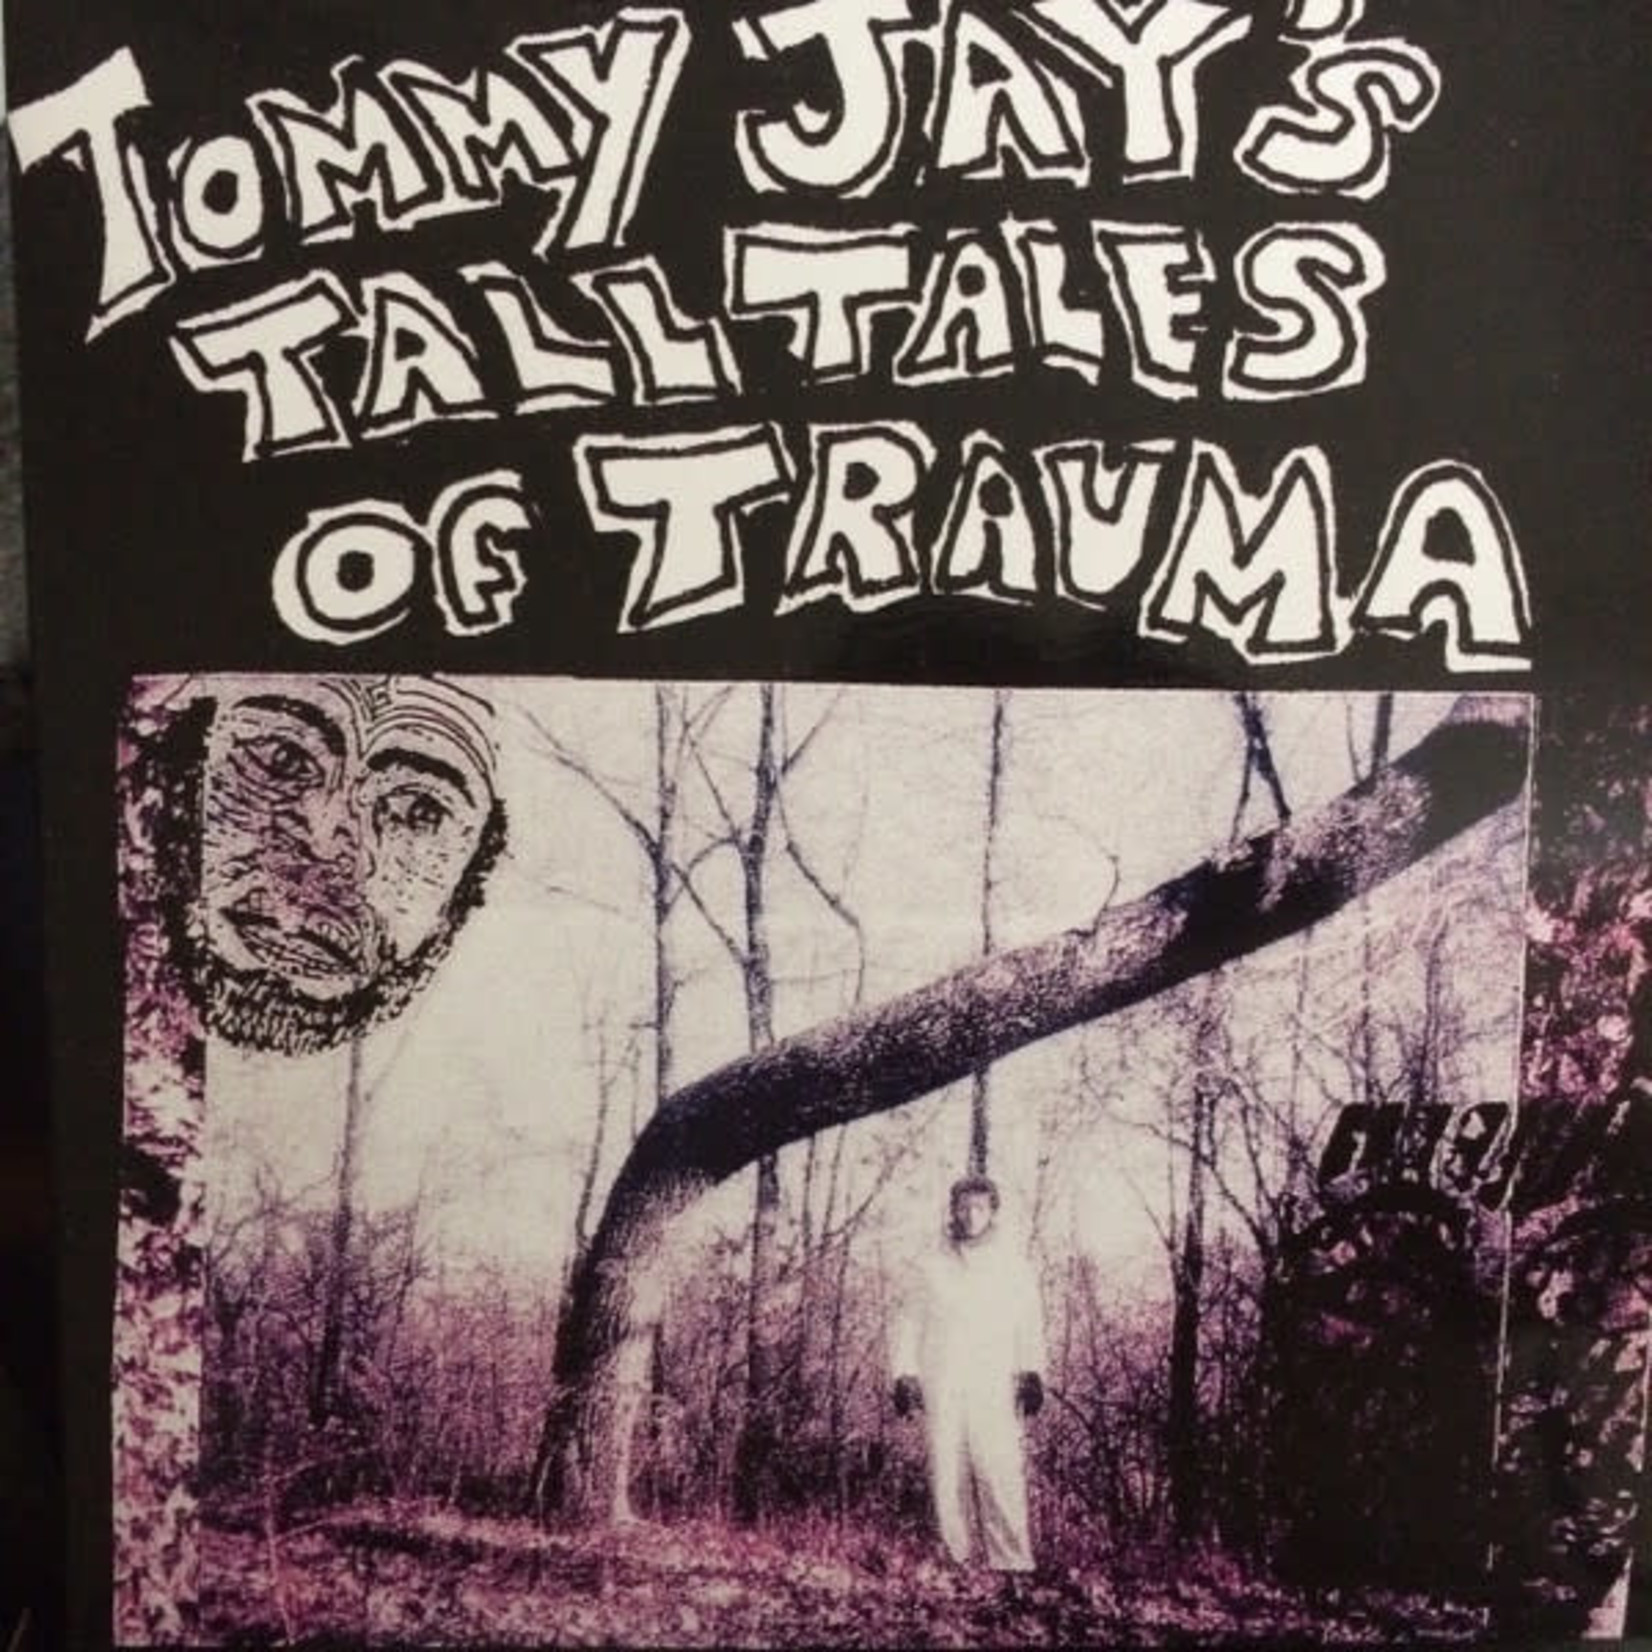 Tommy Jay - Tall Tales of Trauma (2LP)